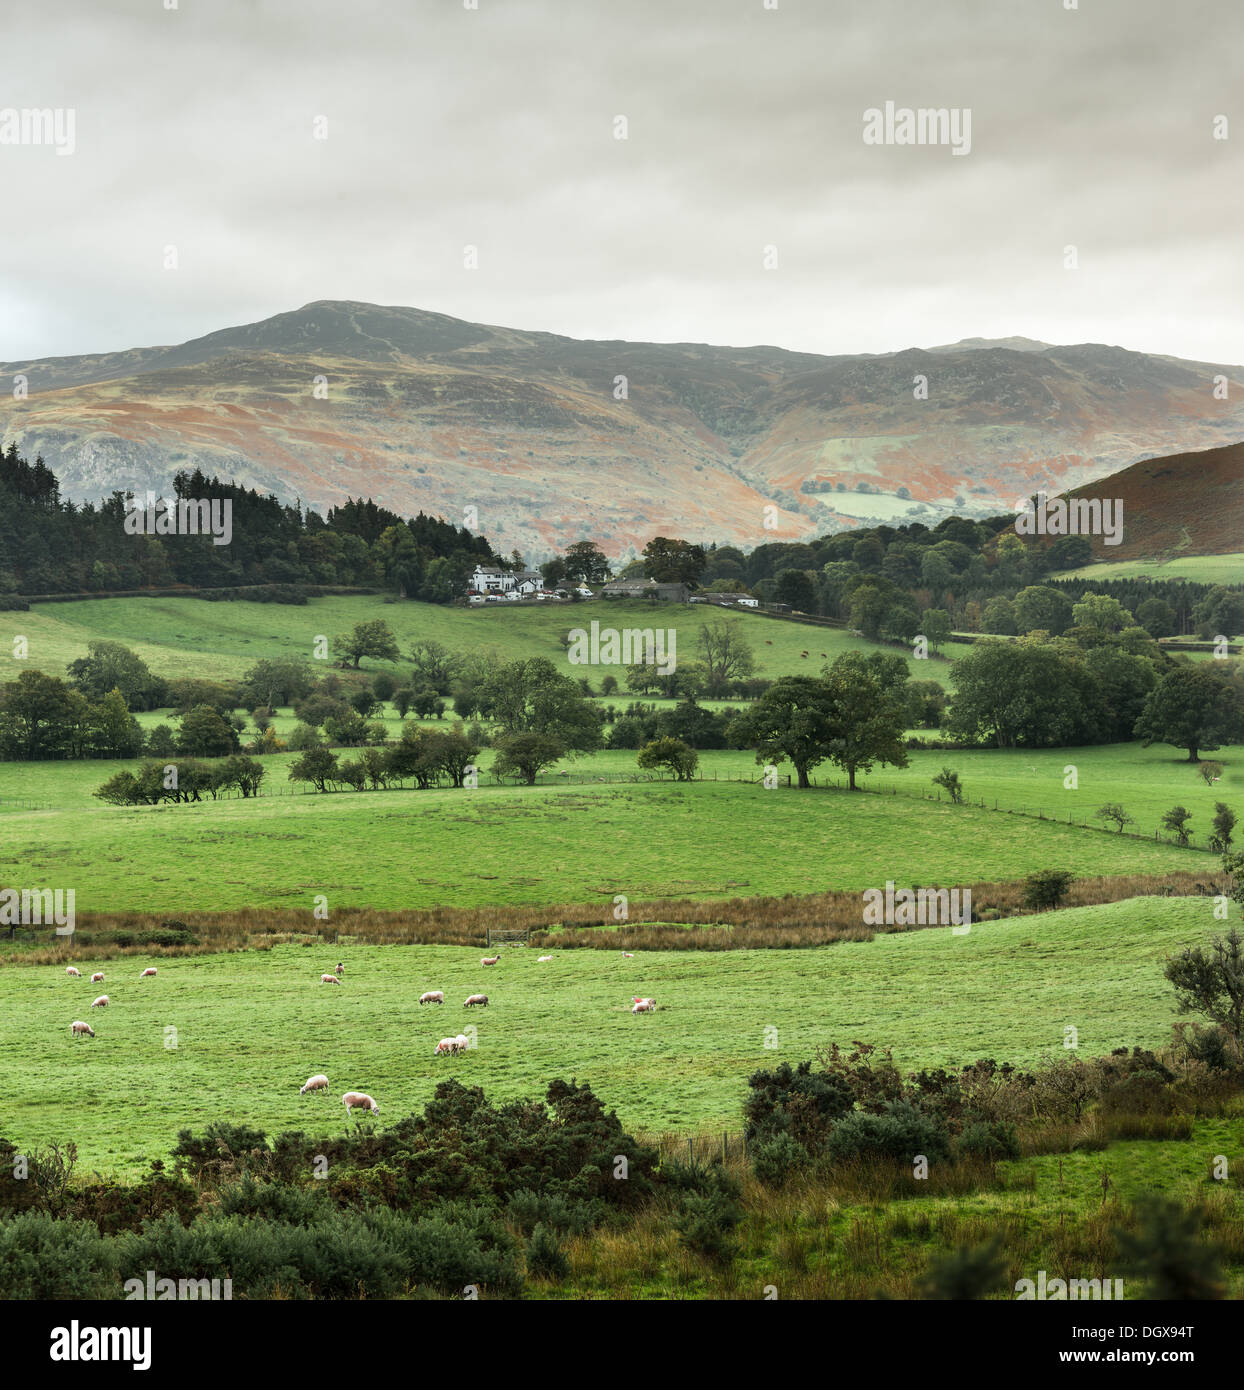 Pecora che pascola sull'erba verde del Newlands valley nel distretto del lago, Cumbria, Inghilterra. Foto Stock